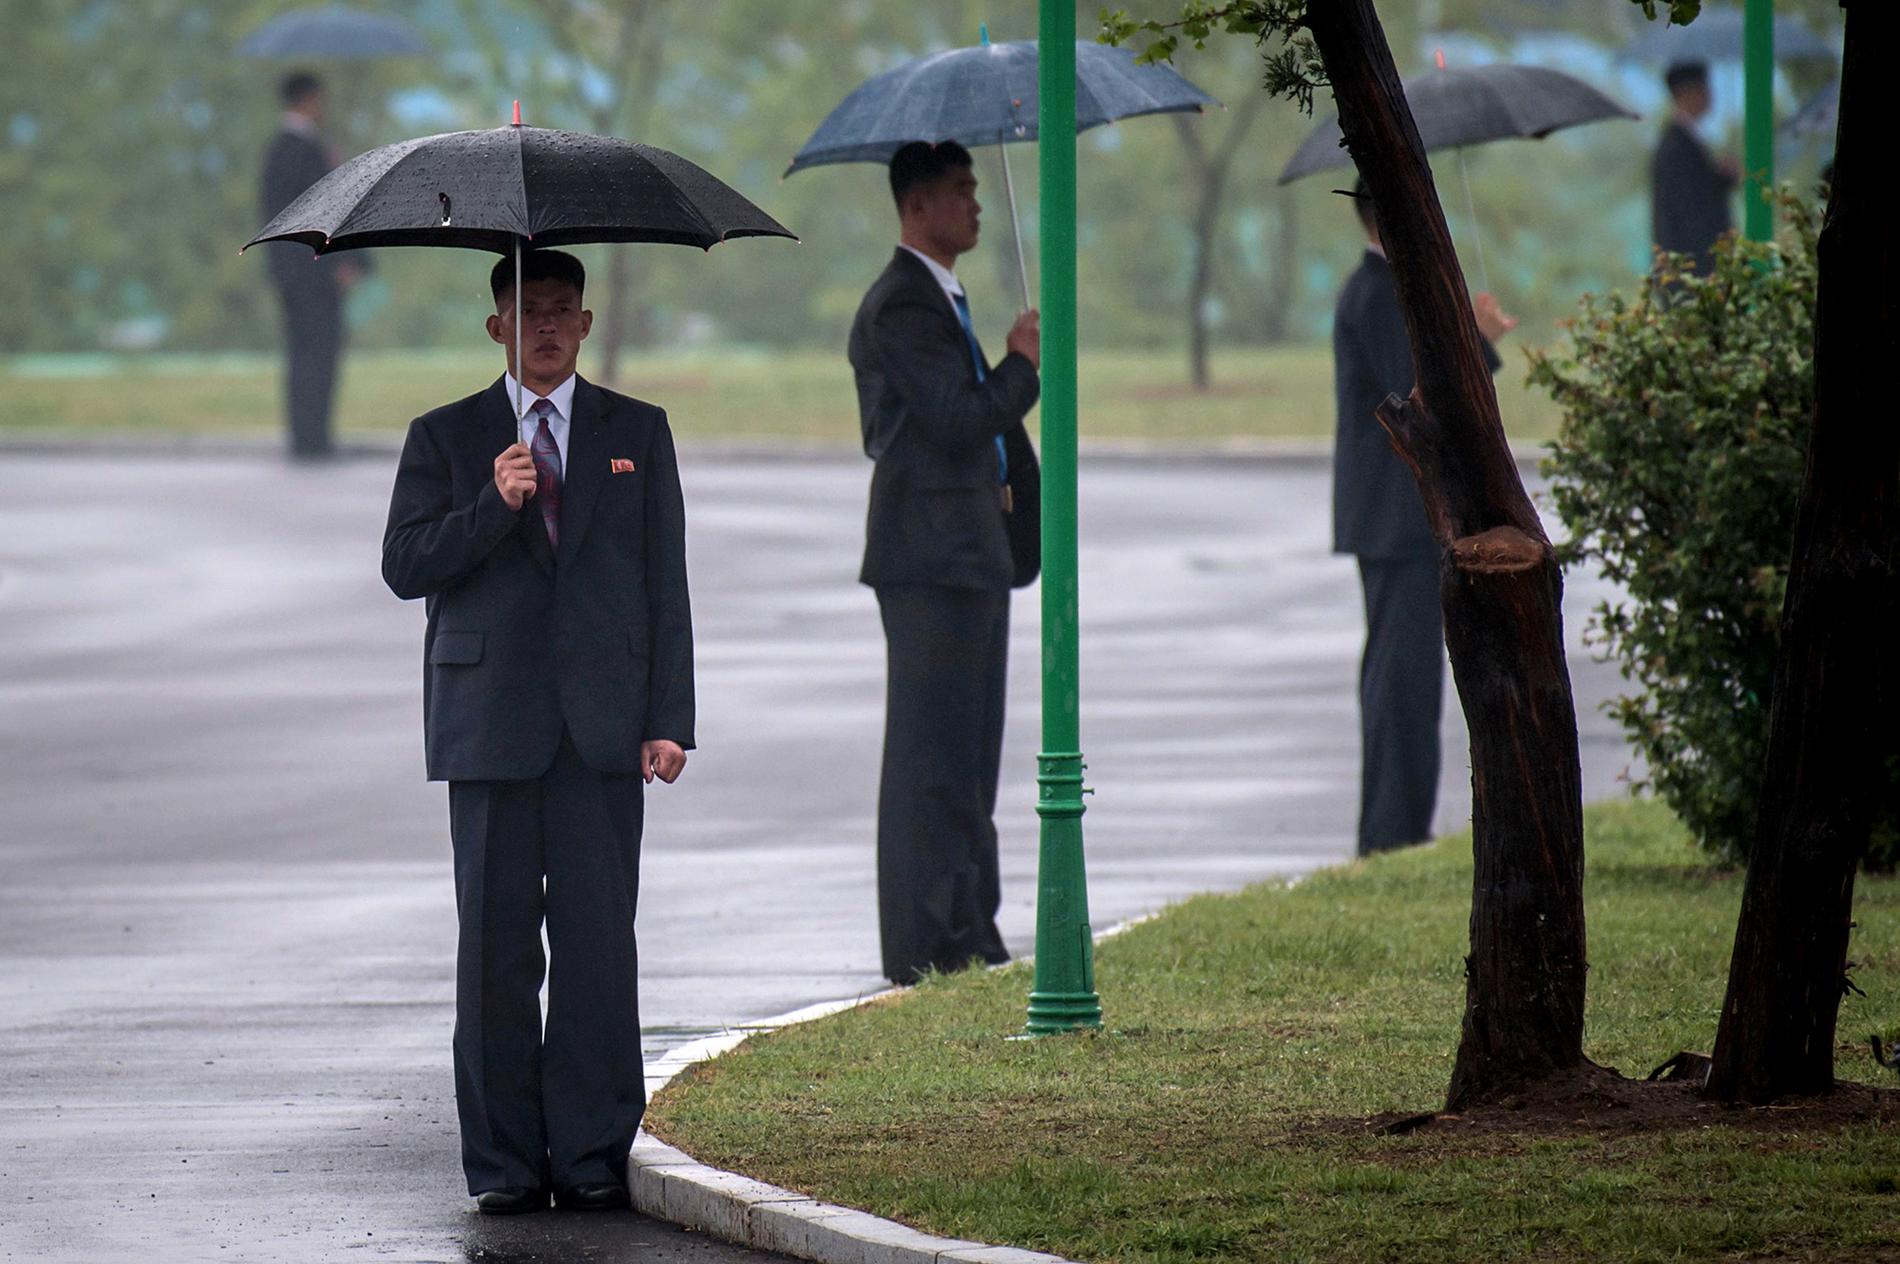 Paraplymän ståendes utanför kongresshallen.